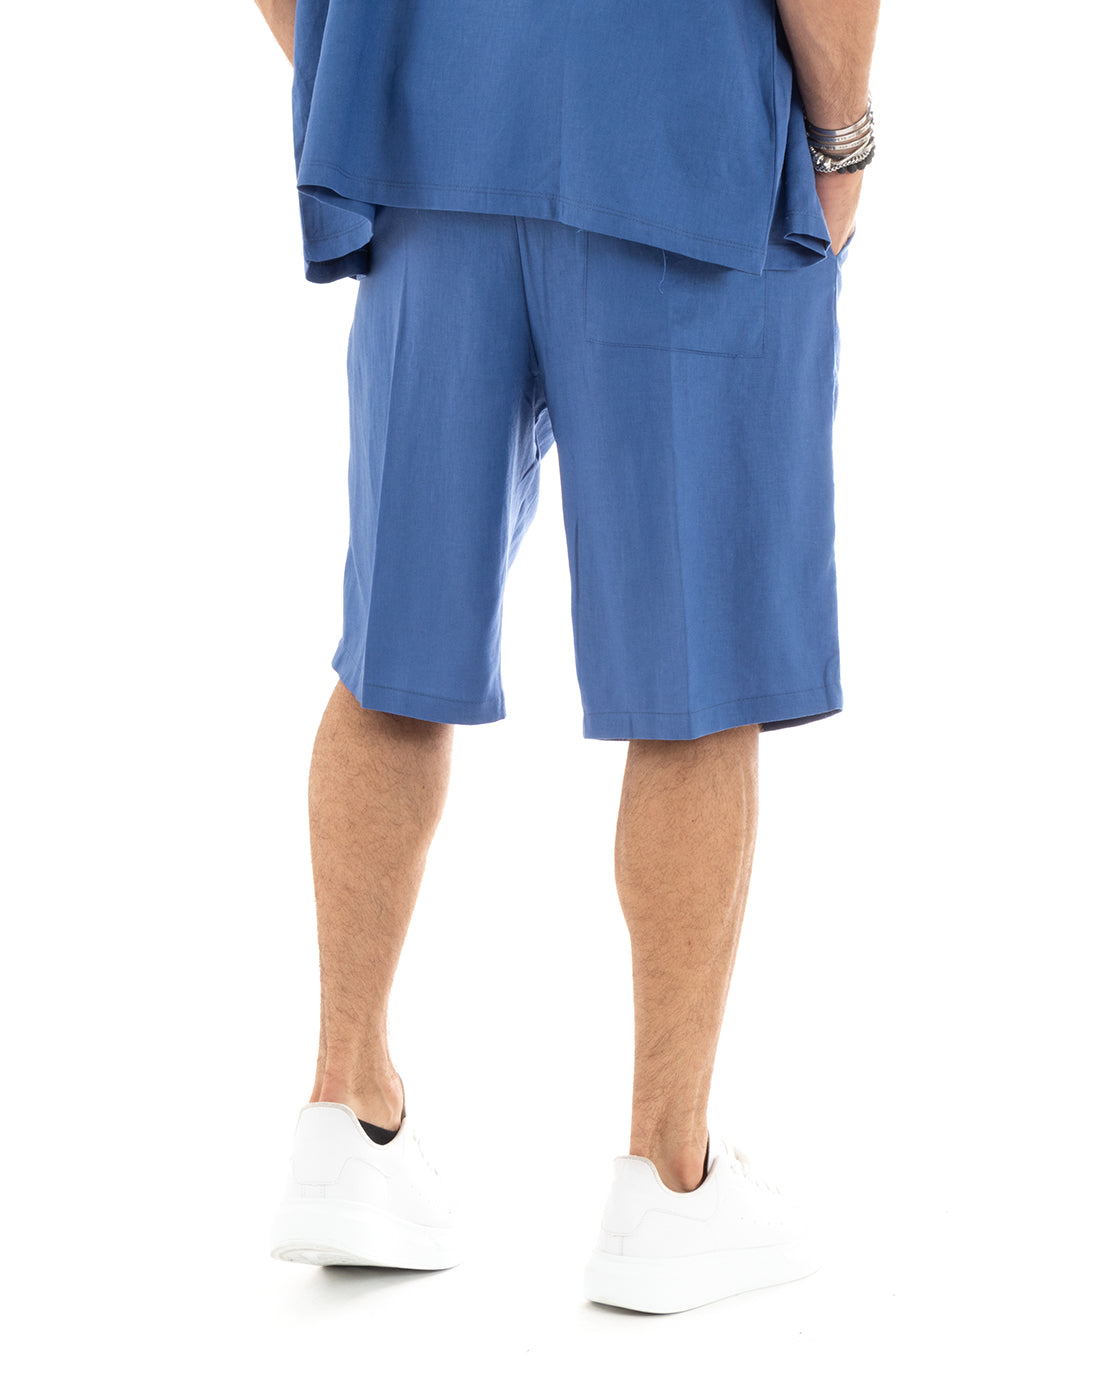 Completo Set Coordinato Uomo Lino Camicia Con Colletto Bermuda Outfit Blu Royal GIOSAL-OU2345A